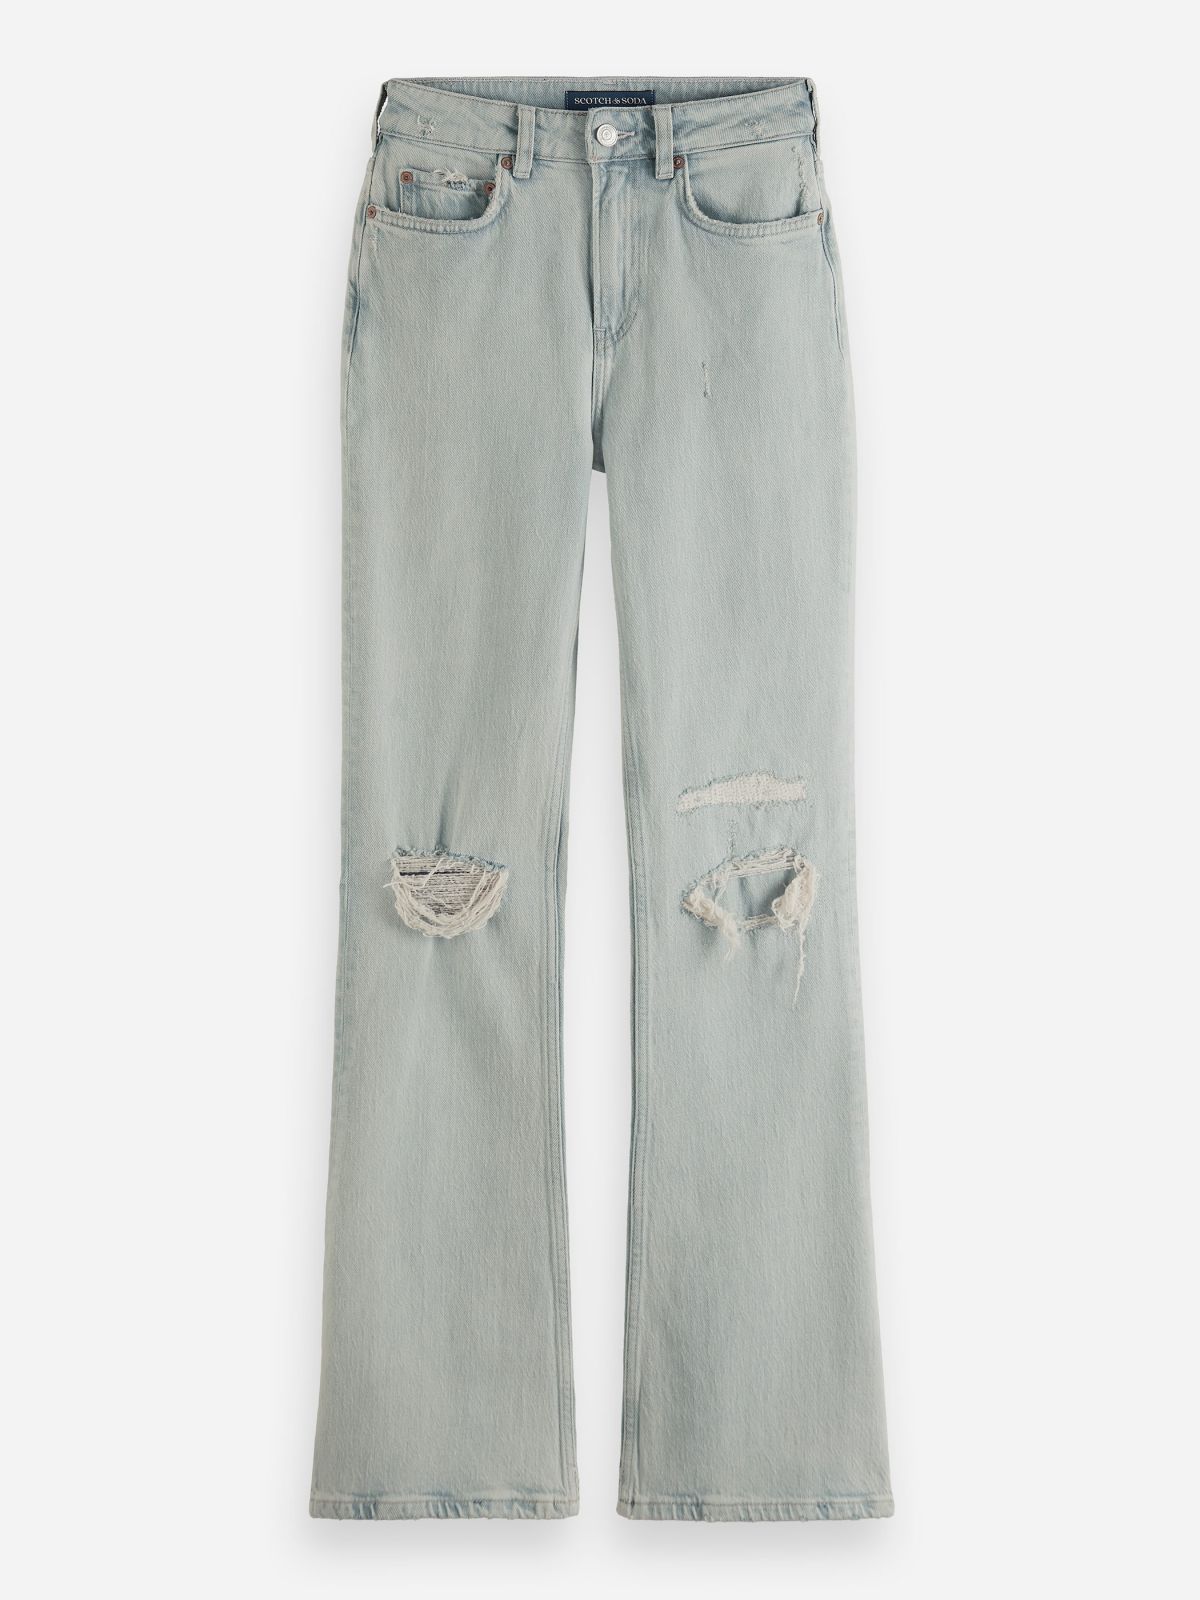  ג'ינס בגזרה מתרחבת / נשים של SCOTCH & SODA